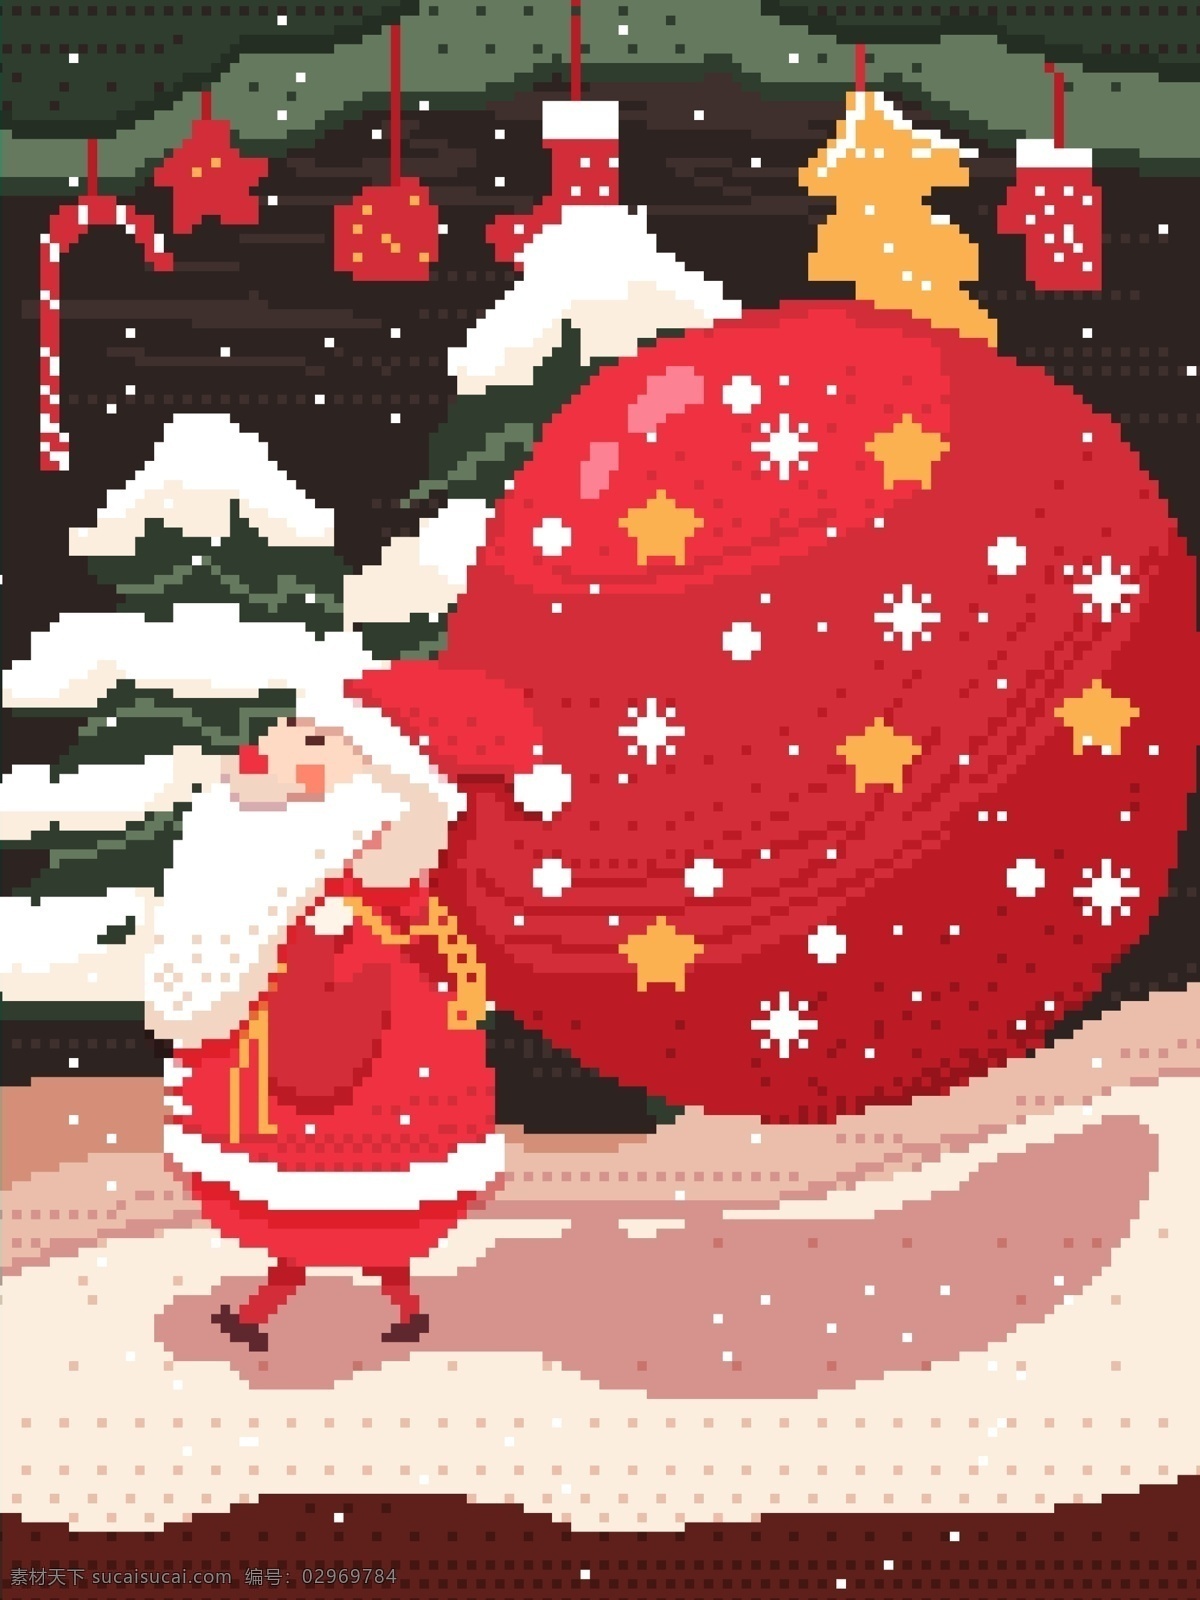 圣诞节 圣诞老人 复古 素风 插画 配 图 壁纸 背景 礼物 雪花 圣诞帽 圣诞礼物 手套 树木 圣诞树 下雪 场景 冬天 袜子 手杖 像素 像素风 像素画 配图 启动页